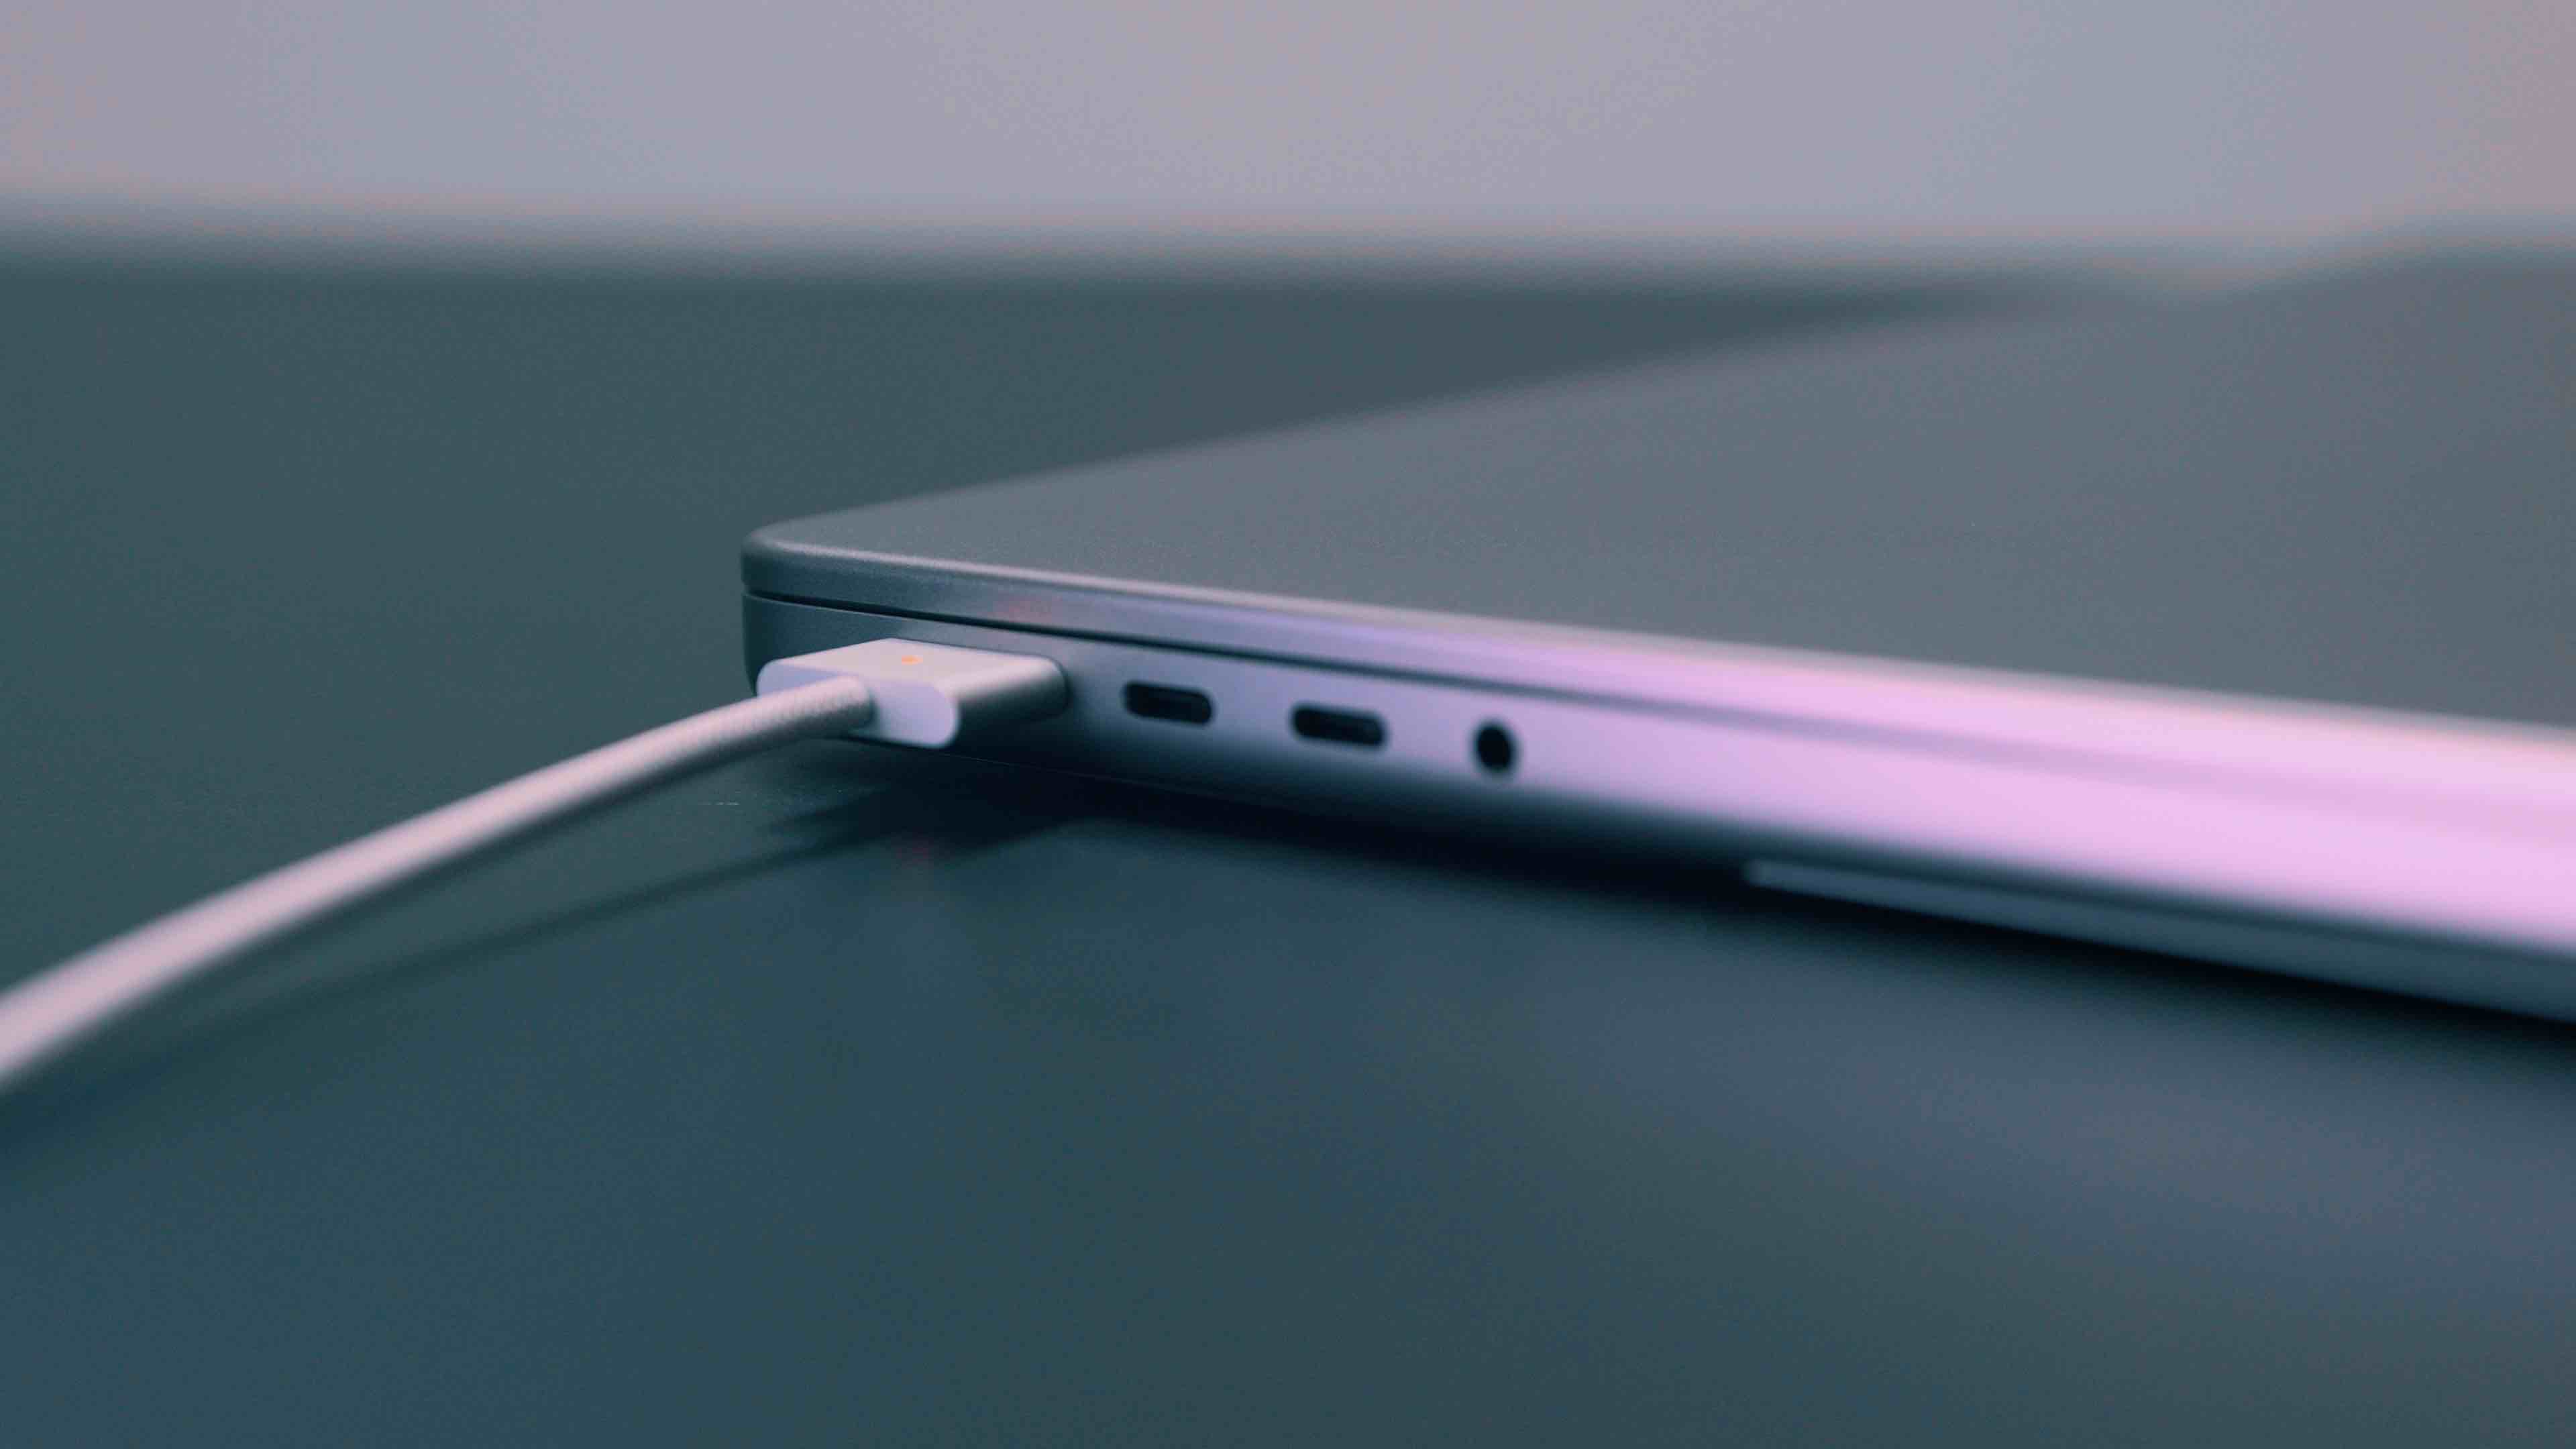 MacBook not charging MagSafe